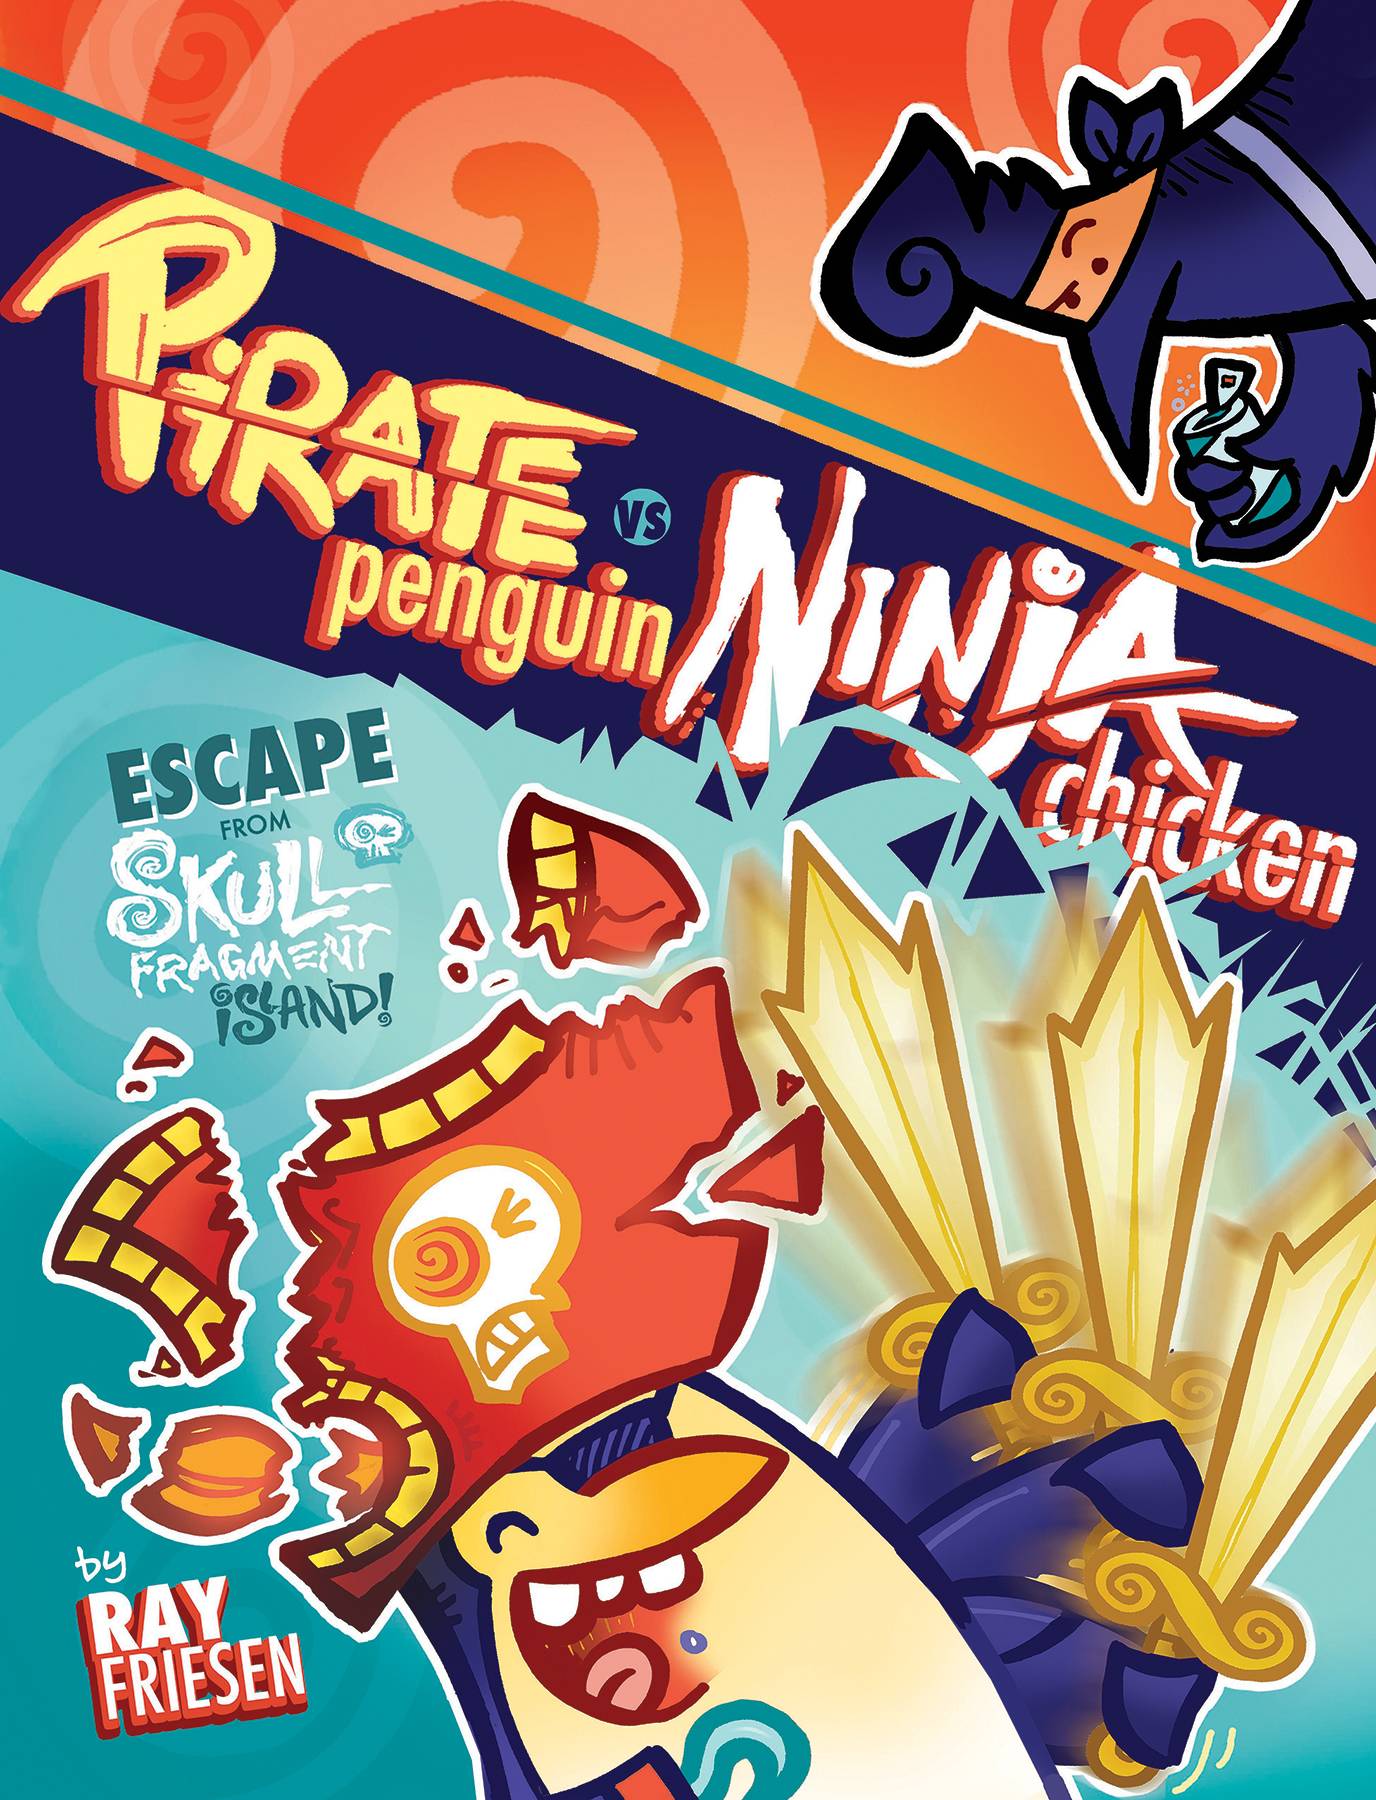 Pirate Penguin Vs Ninja Chicken Hardcover Volume 2